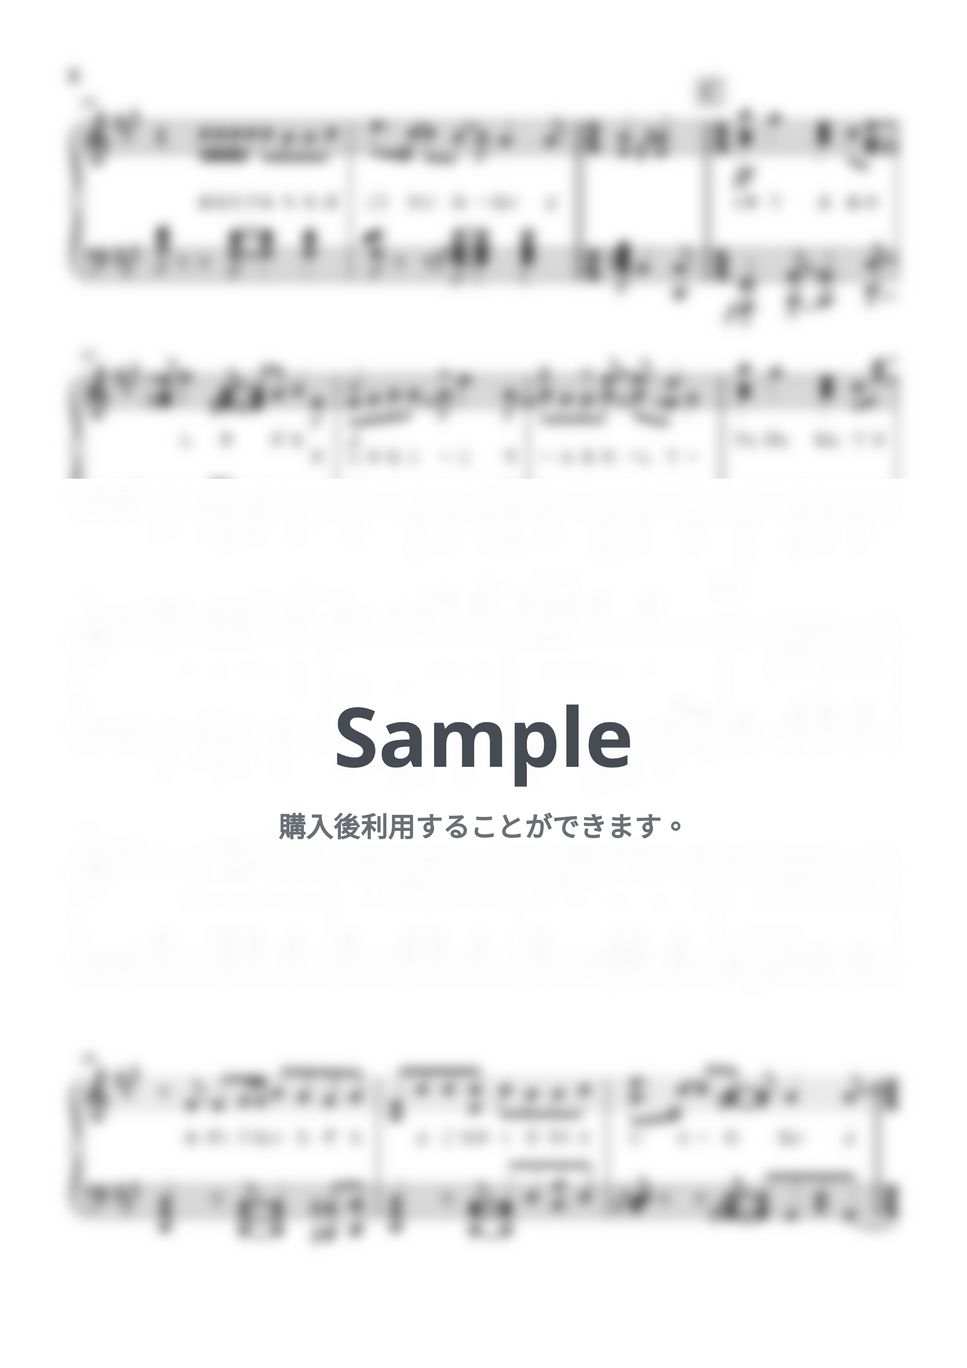 呪術廻戦 - 一途 (ピアノ / 上級/ 映画 / ソロ / 主題歌 / 呪術廻戦) by jpopピアノ楽譜チャンネル